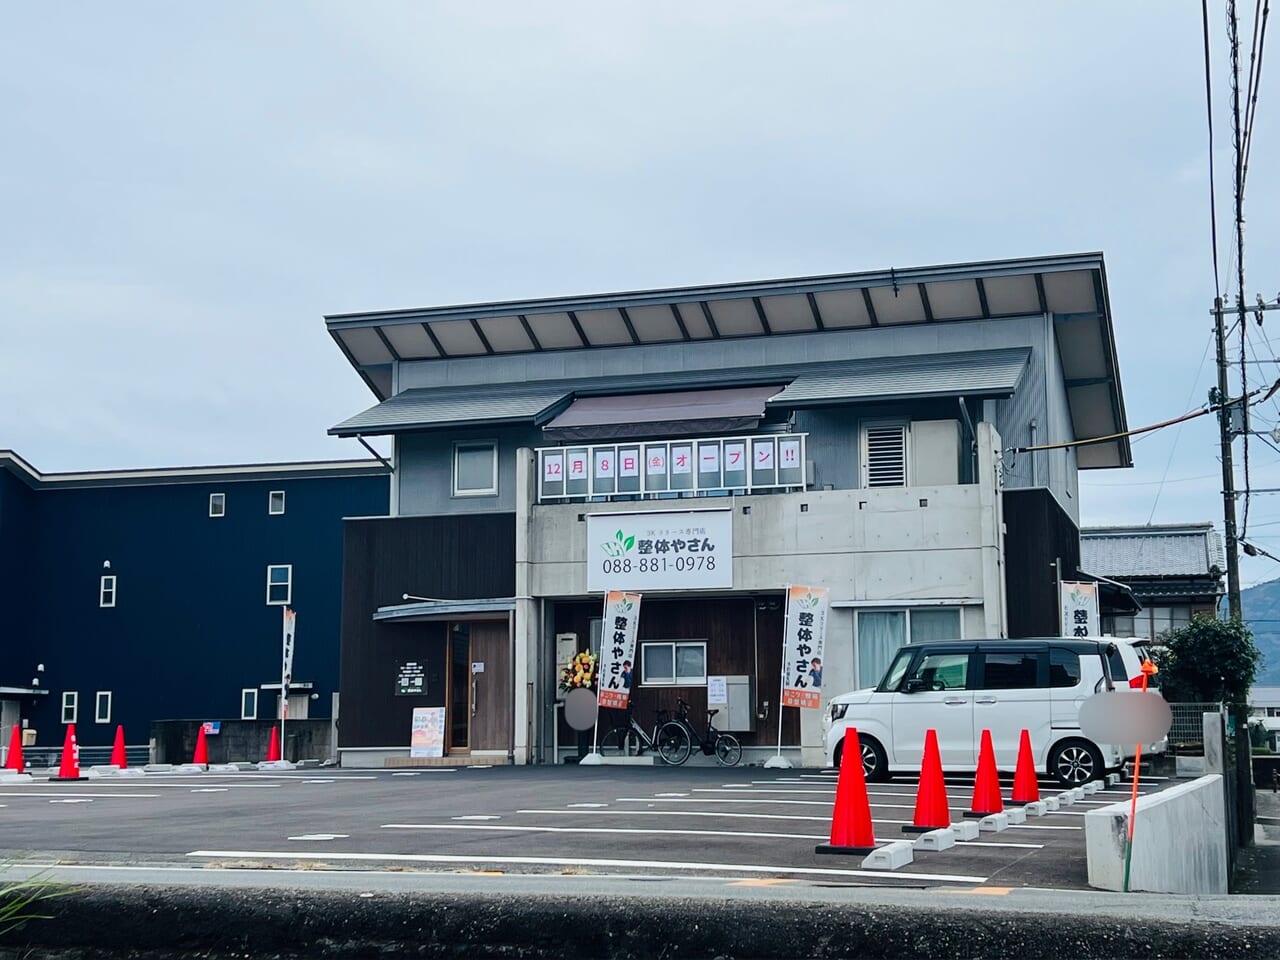 2023年12月8日に高知市玉水町にオープンした「3Kリリース専門店 整体やさん 高知店」の外観